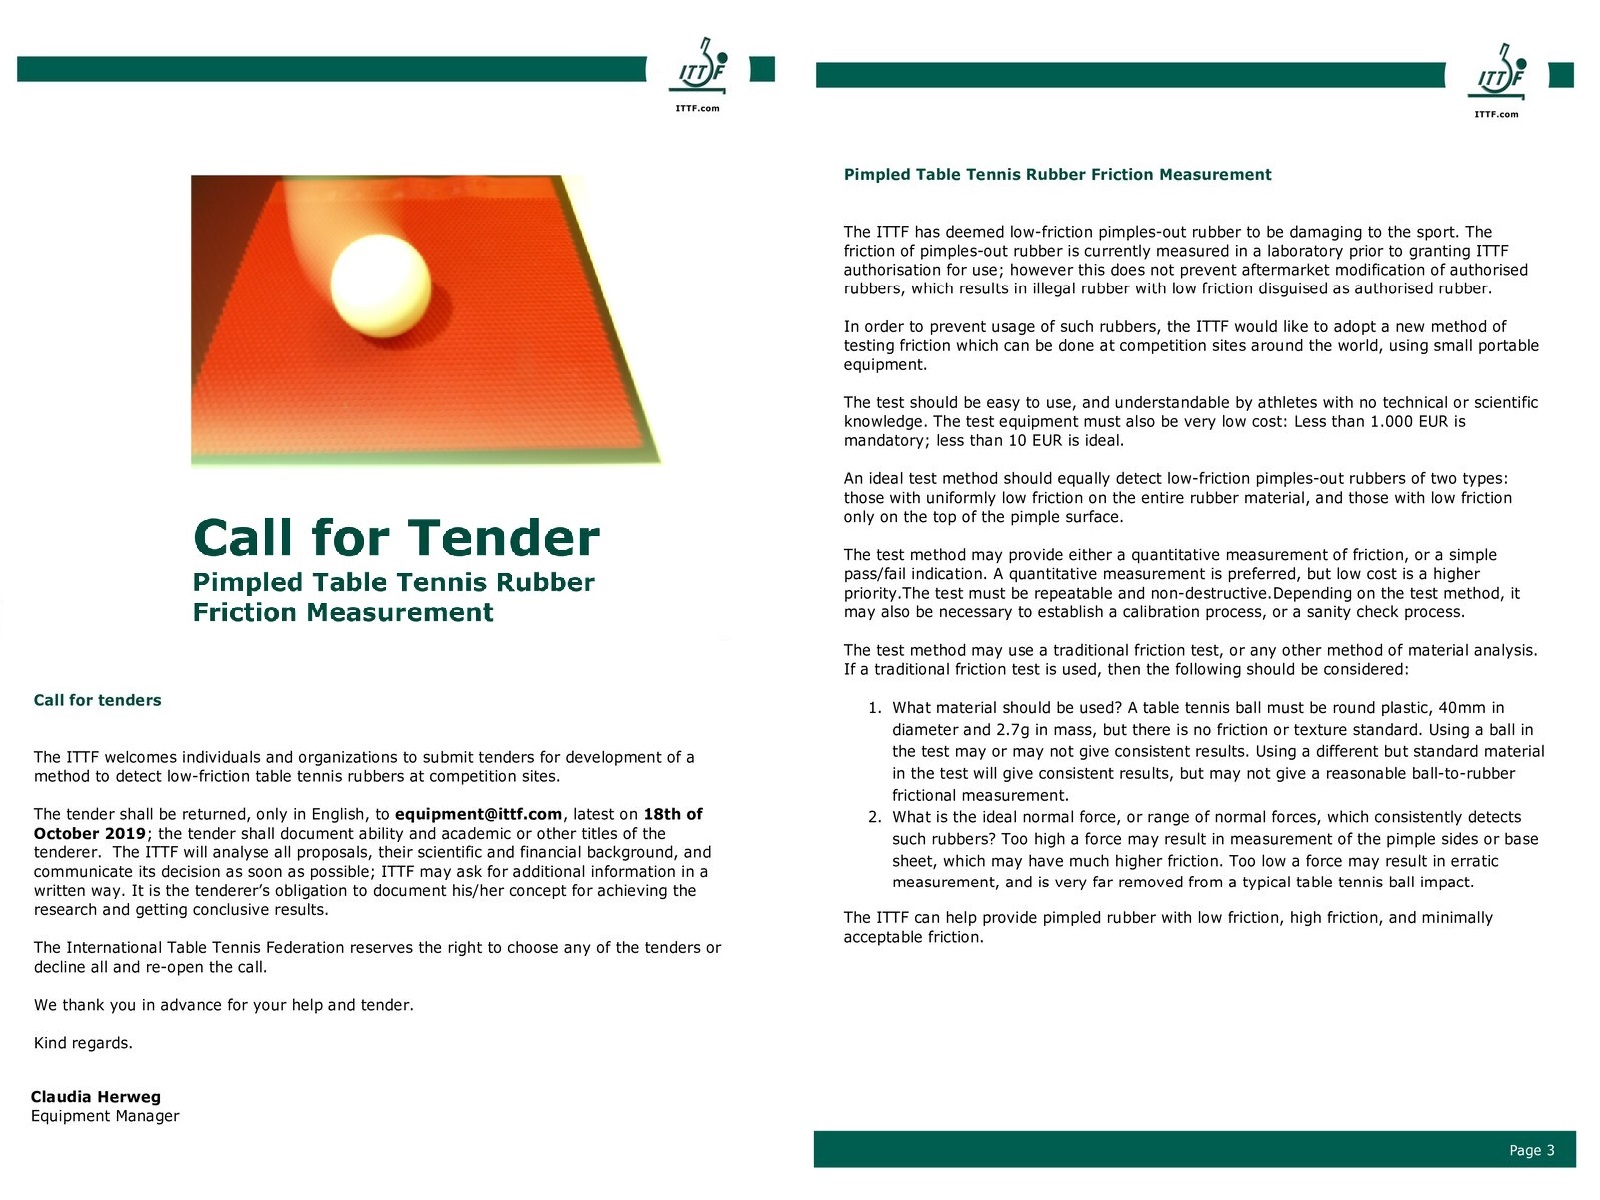 ITTF Call for Tender (1+1).jpg